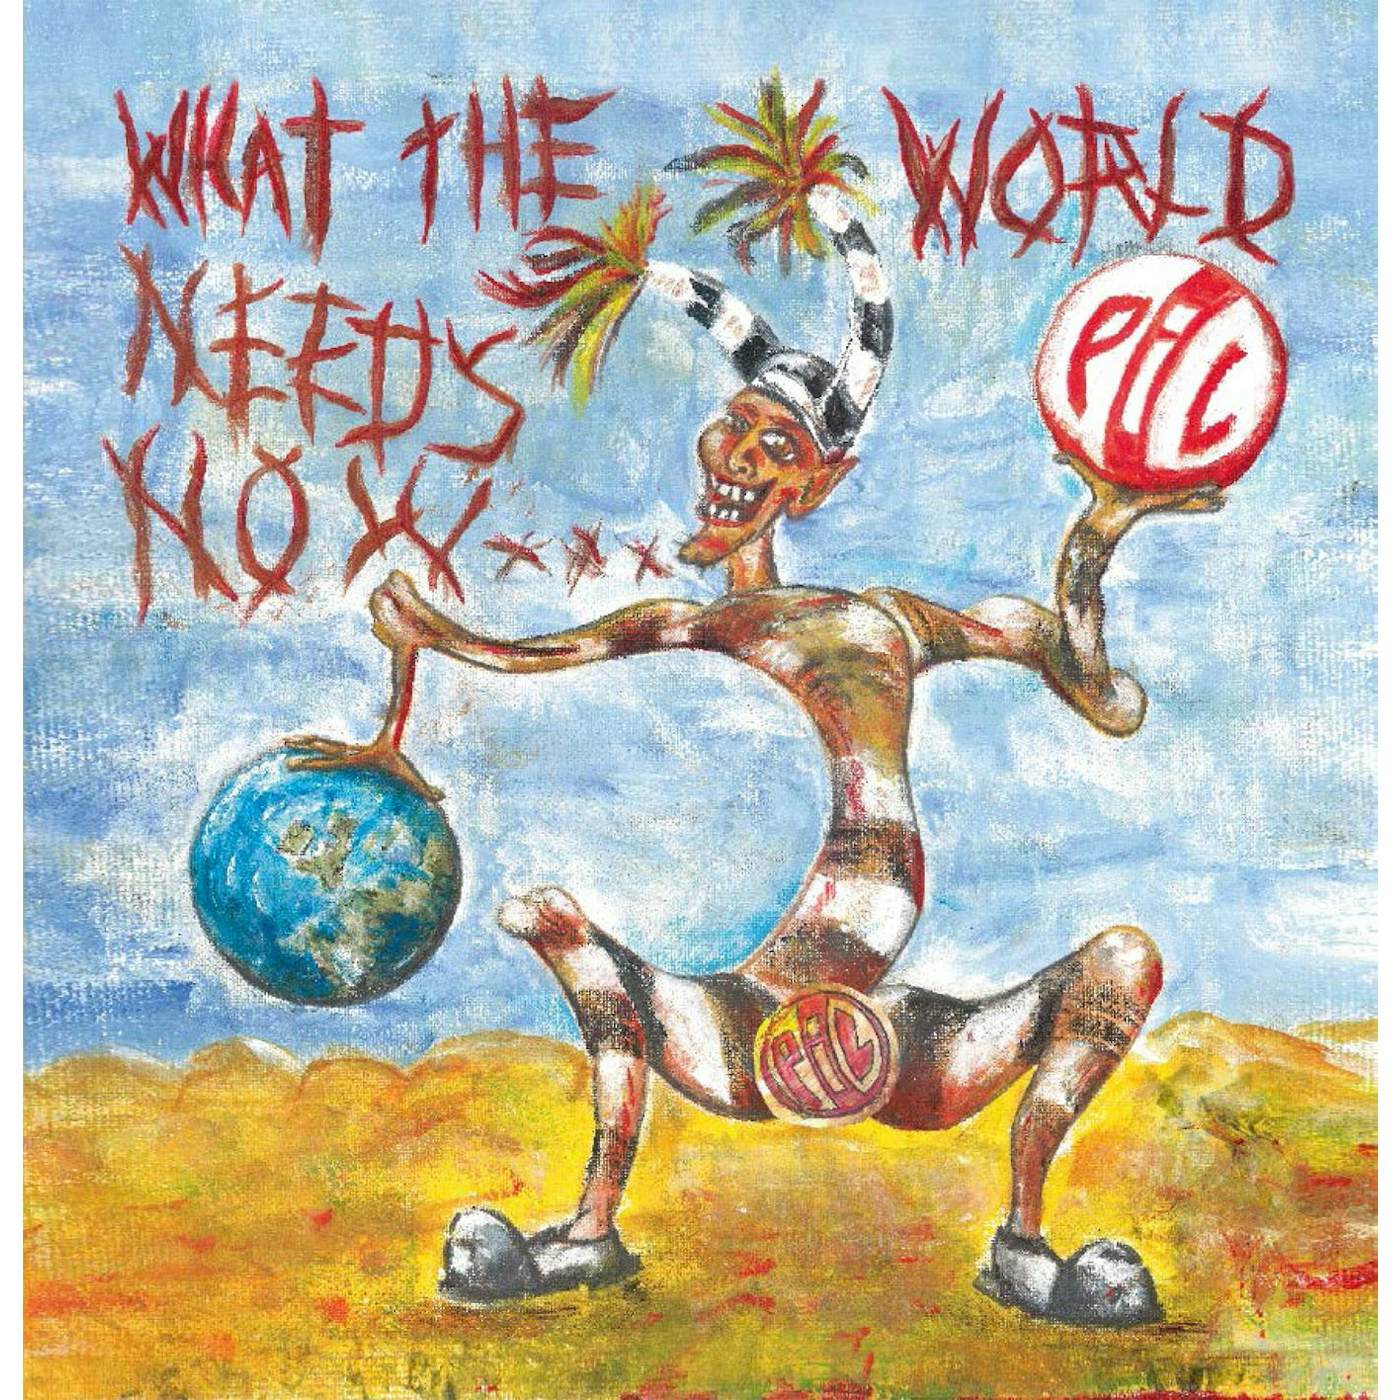 Public Image Ltd. (PiL) 'What The World Needs Now...' Vinyl 2xLP - Blue Vinyl Record